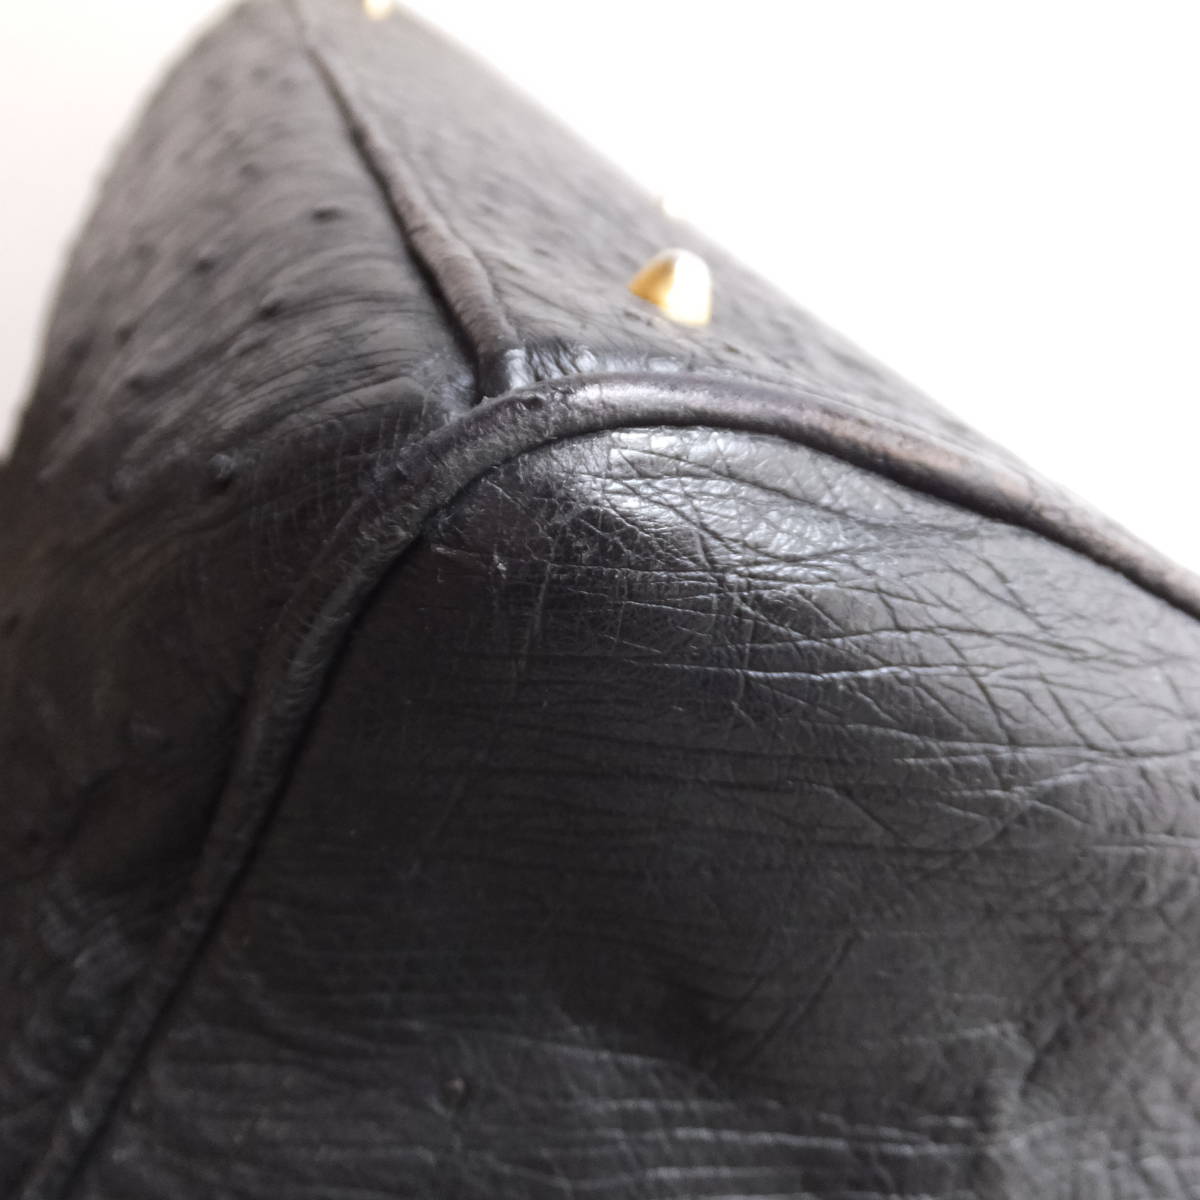  Ostrich кожа ручная сумочка чёрный черный ключ имеется большая сумка натуральная кожа Vintage 